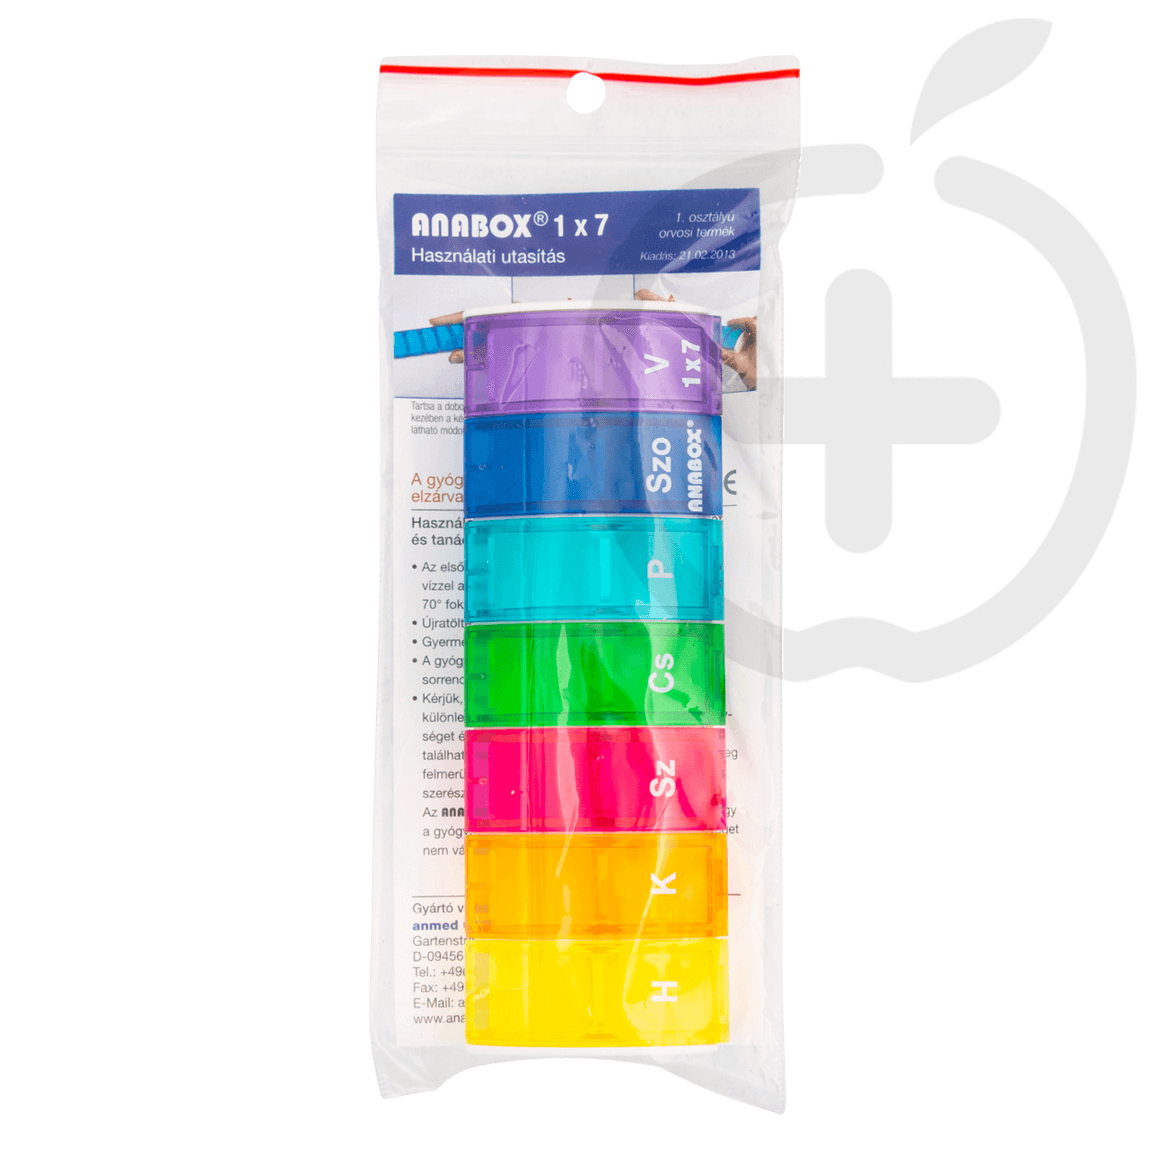 Anabox 7 napos szivárvány színű gyógyszeradagoló szett